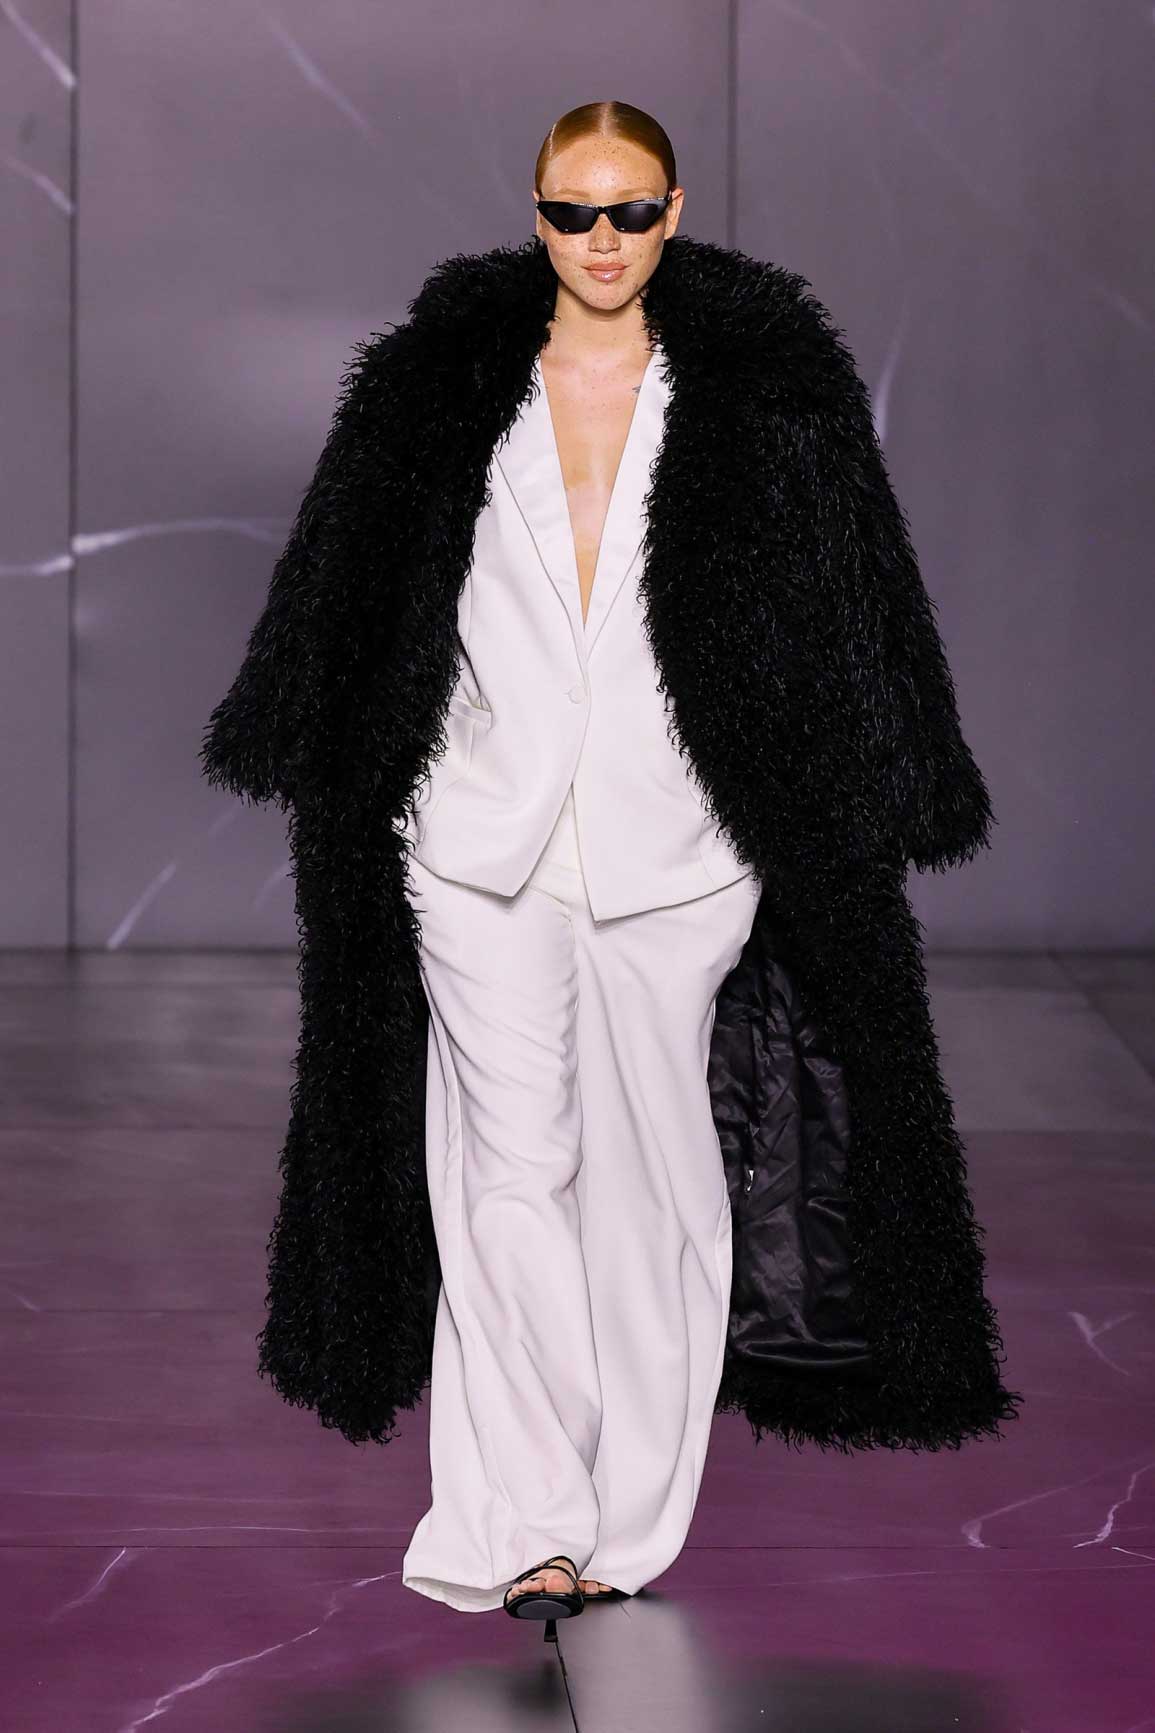 Naomi Campbell PrettyLittleThings Koleksiyonuyla New York Moda Haftası’nda